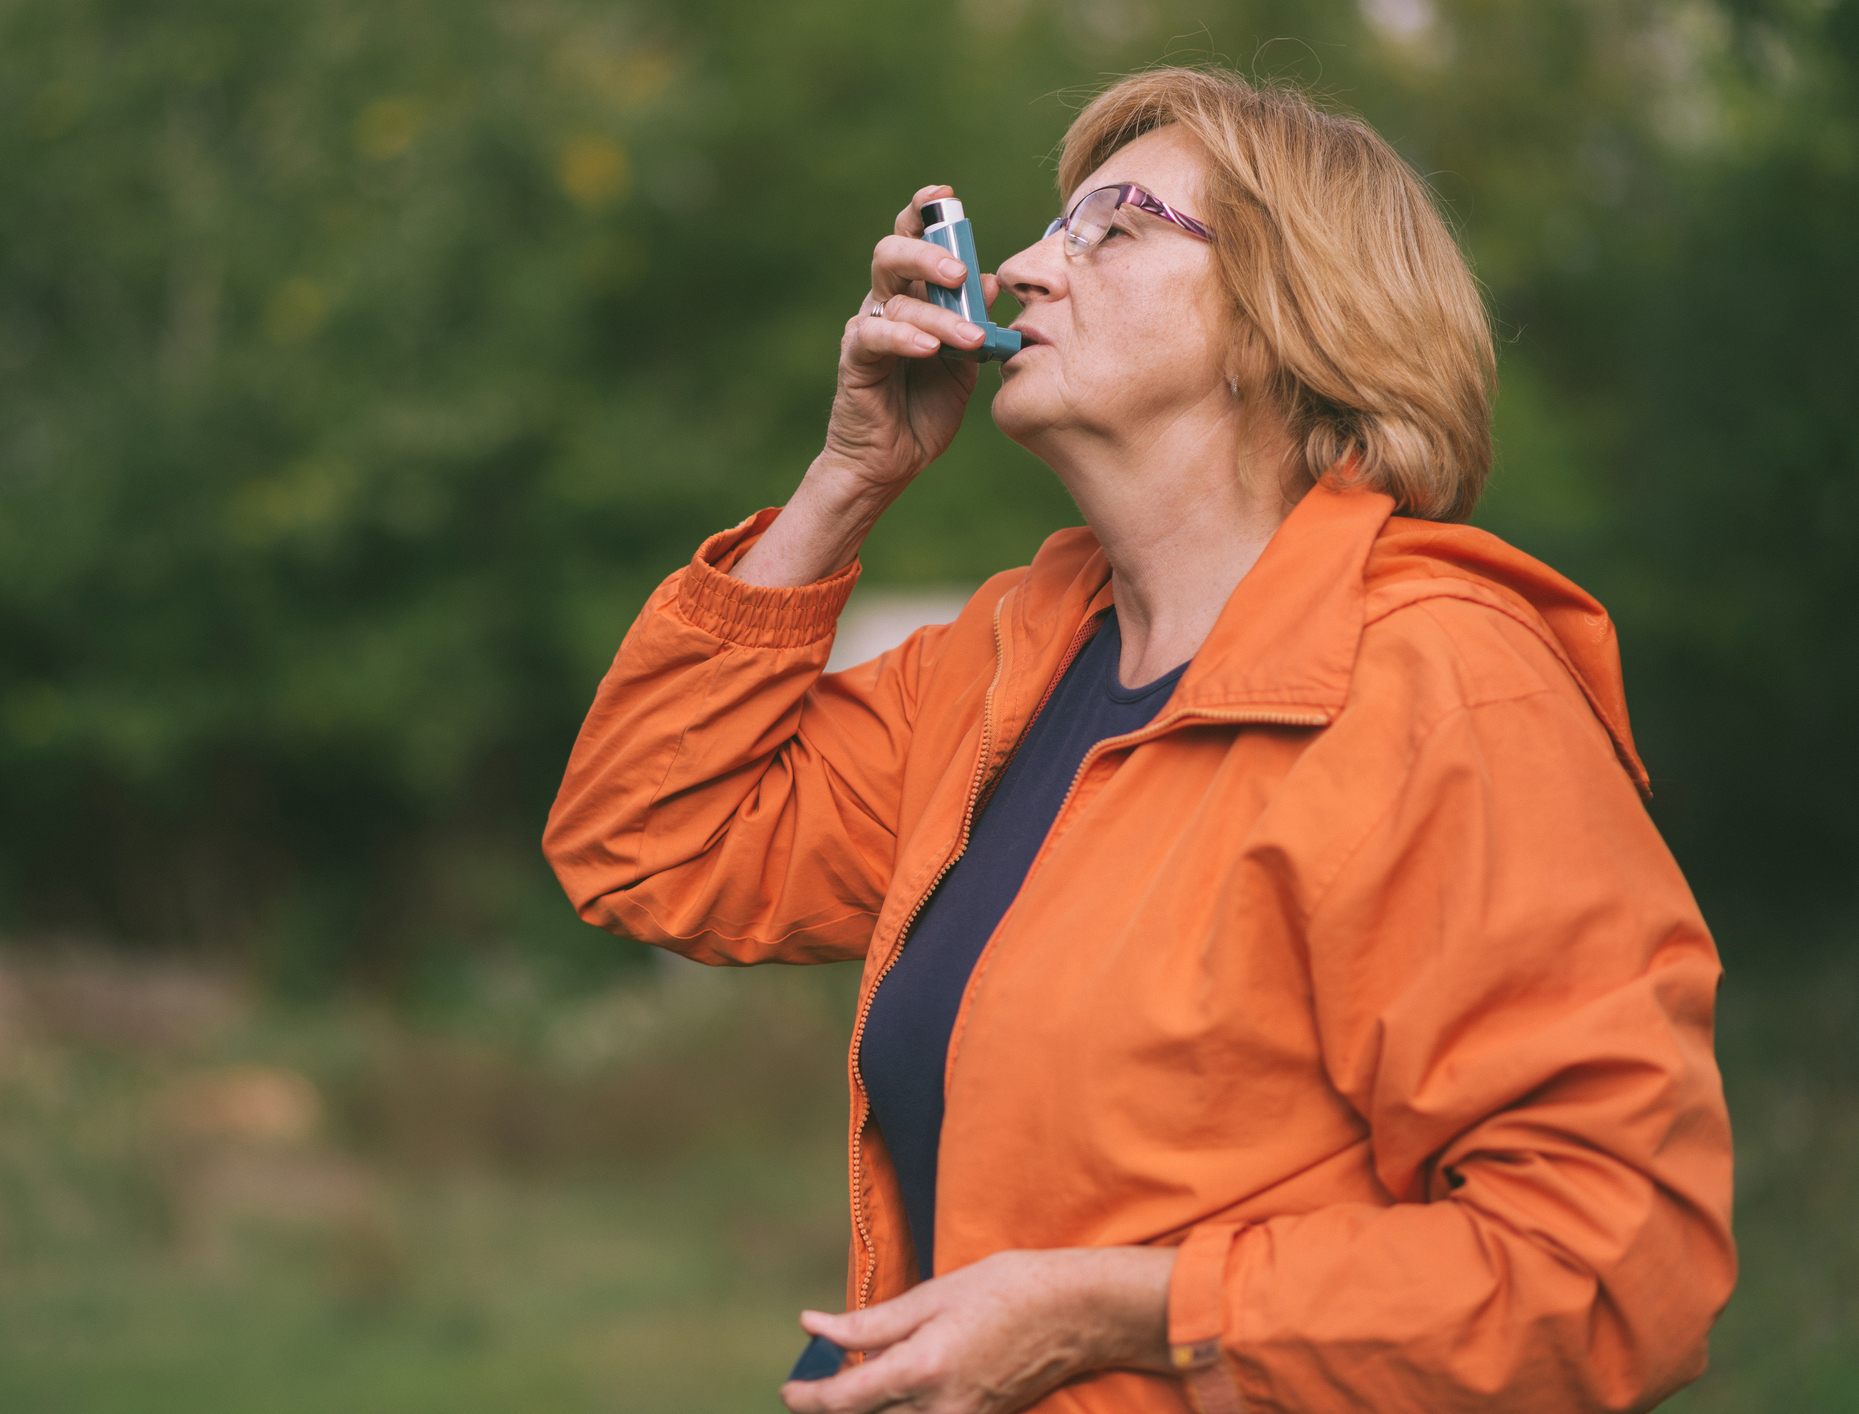 Woman outdoors using an inhaler